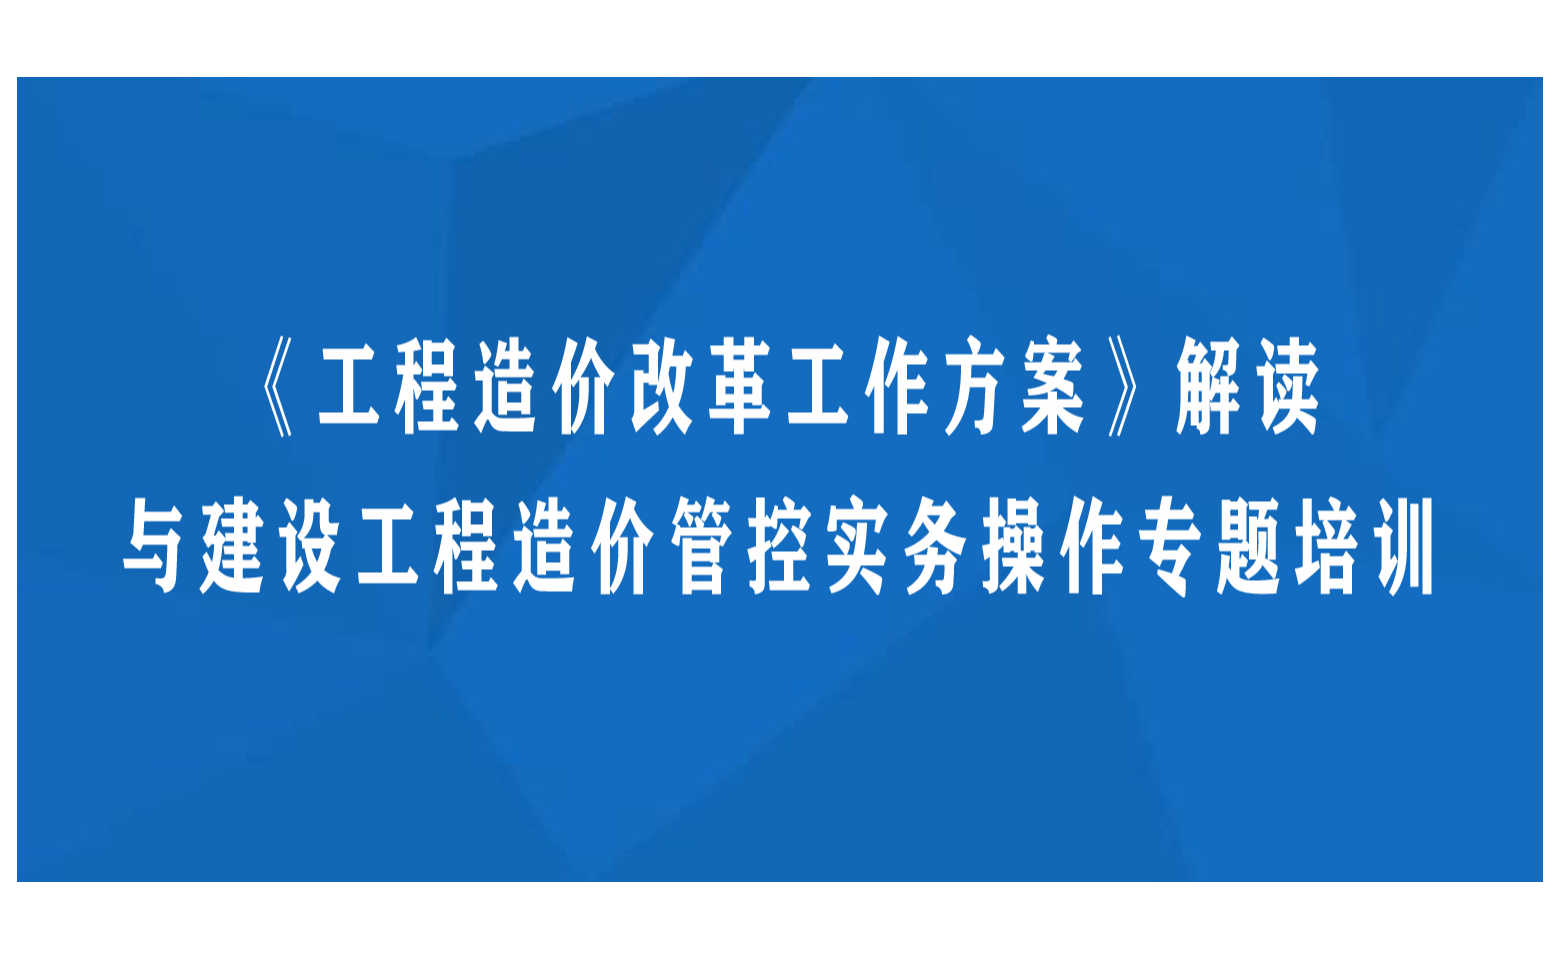 《工程造价改革工作方案》解读与建设工程造价管控实务操作专题杭州11月培训